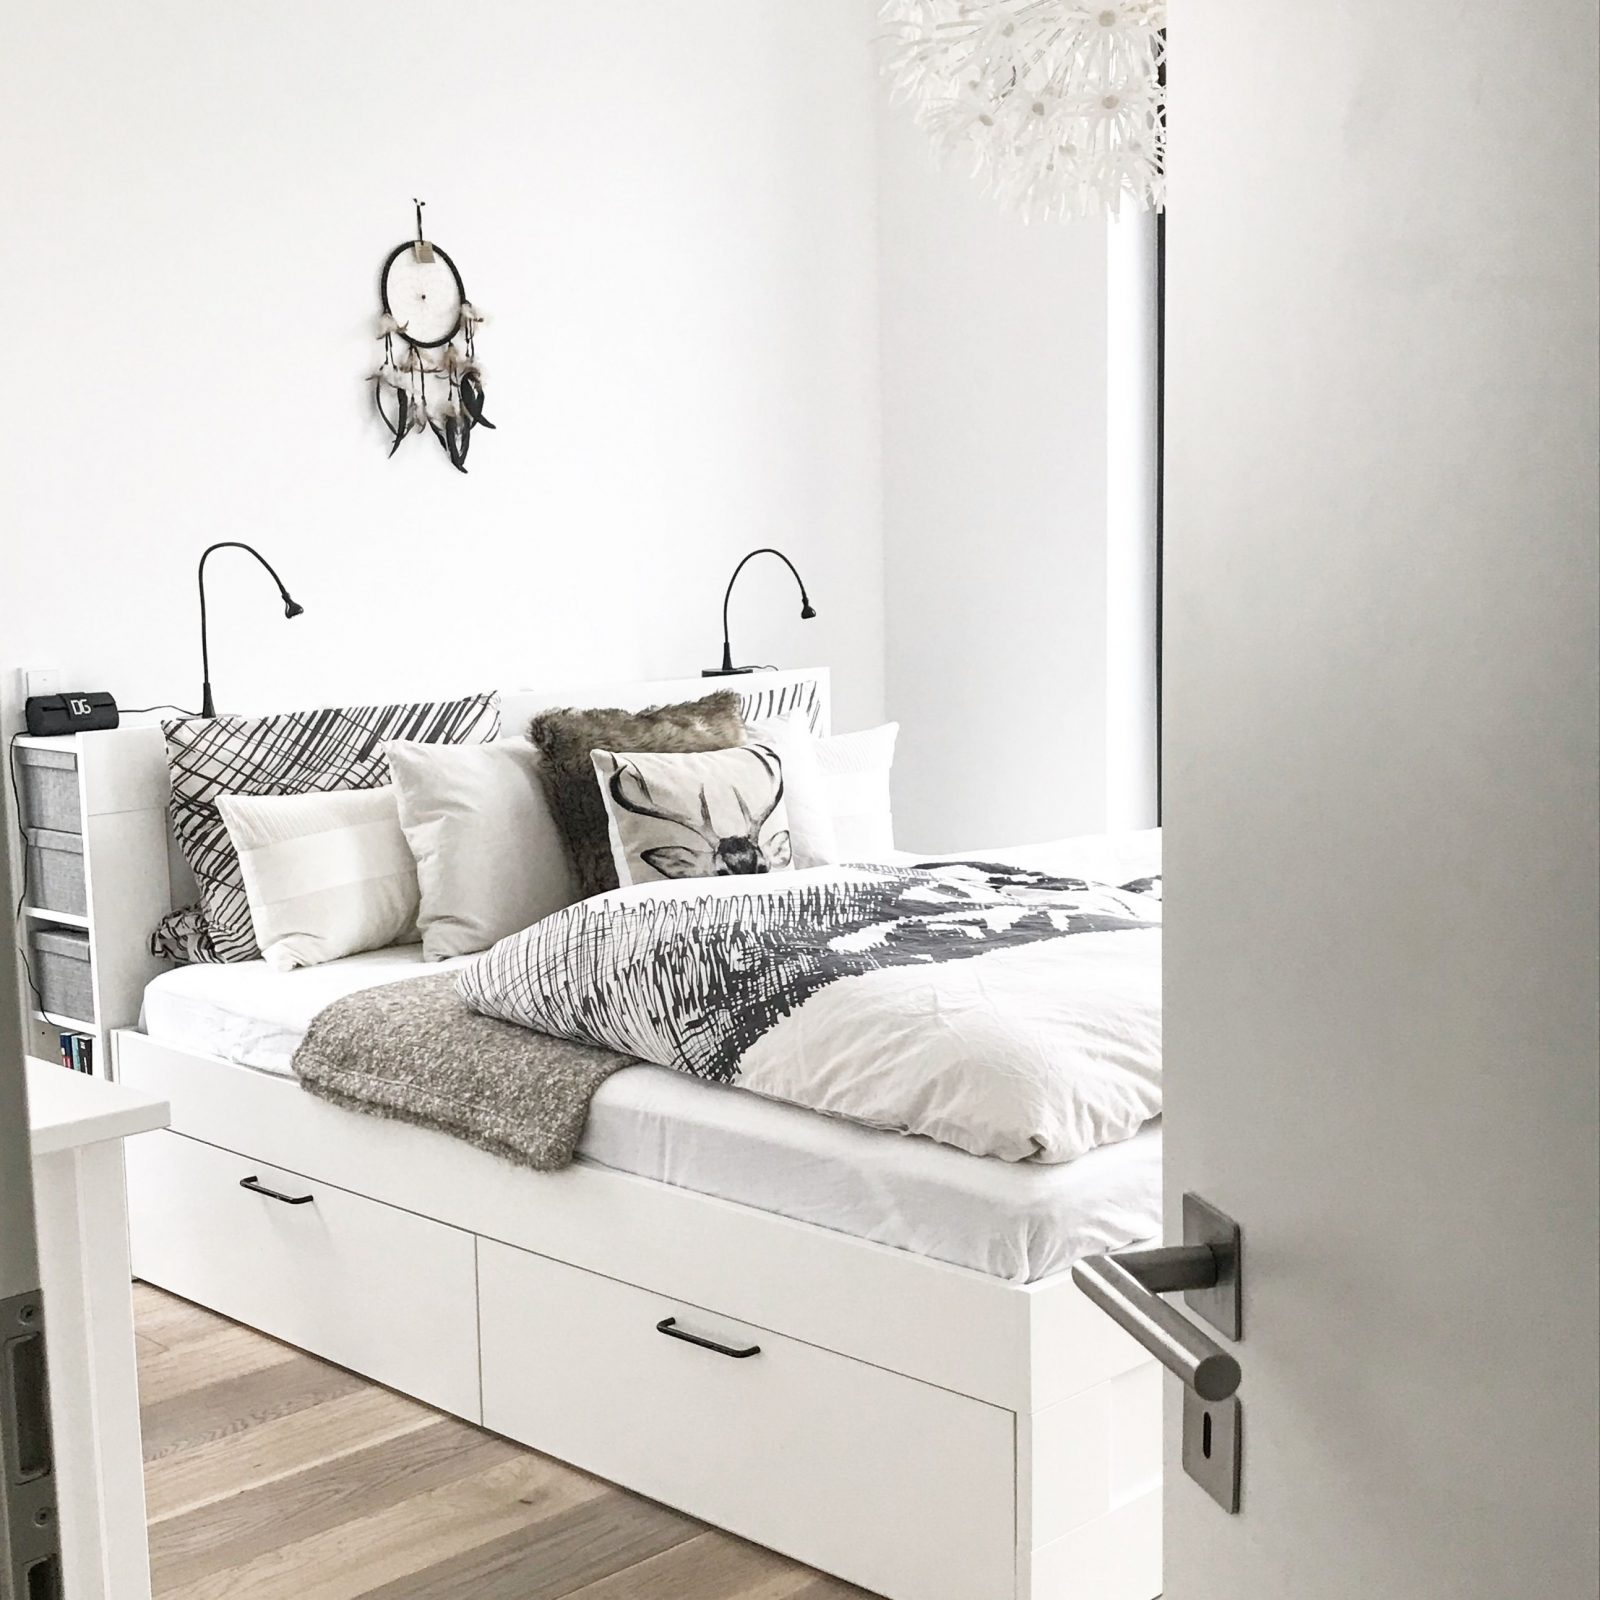 Ikea Brimnes Bett Bettkasten Stauraum Schlafzimmer Bedroom von Stauraum Schlafzimmer Ideen Bild